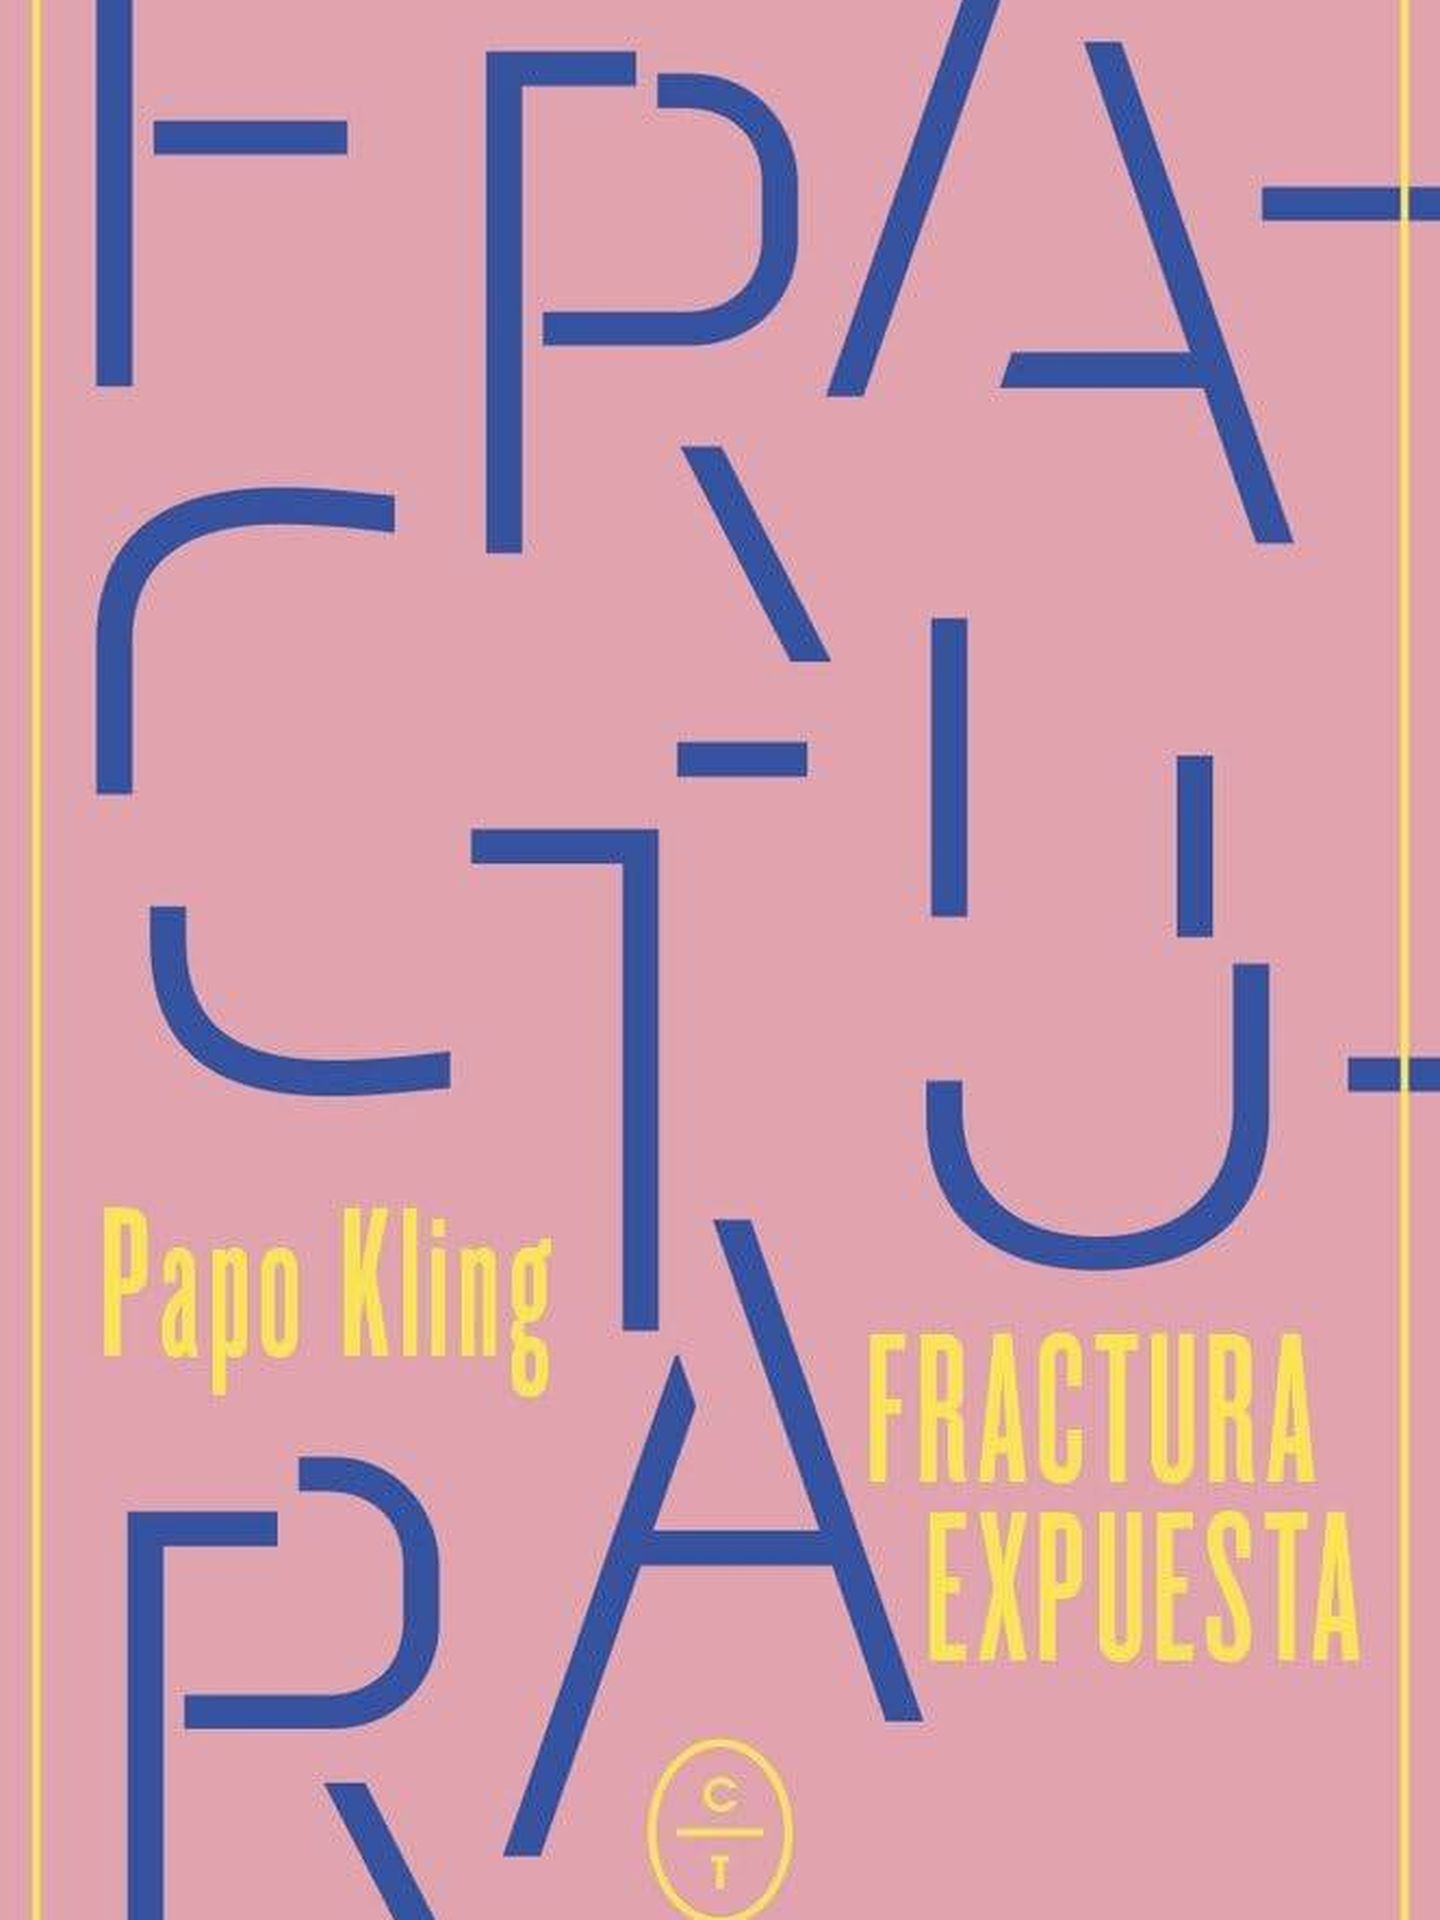 Fractura expuesta, de Papo Kling.